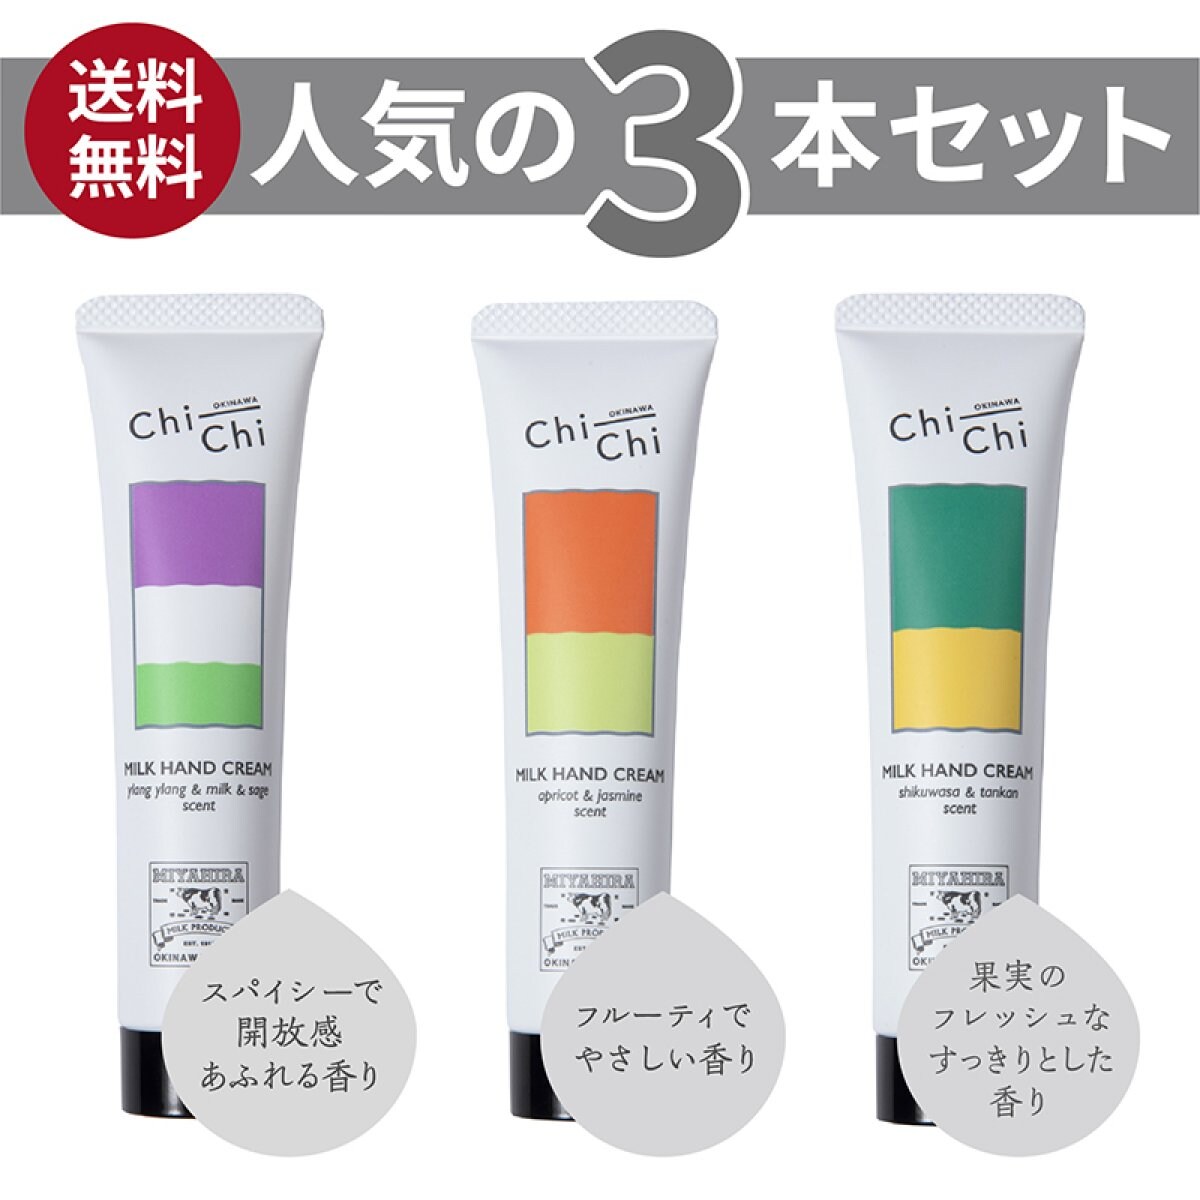 【送料無料】Chi-Chi ミルクハンドクリーム | 3本セット| 30g×3本